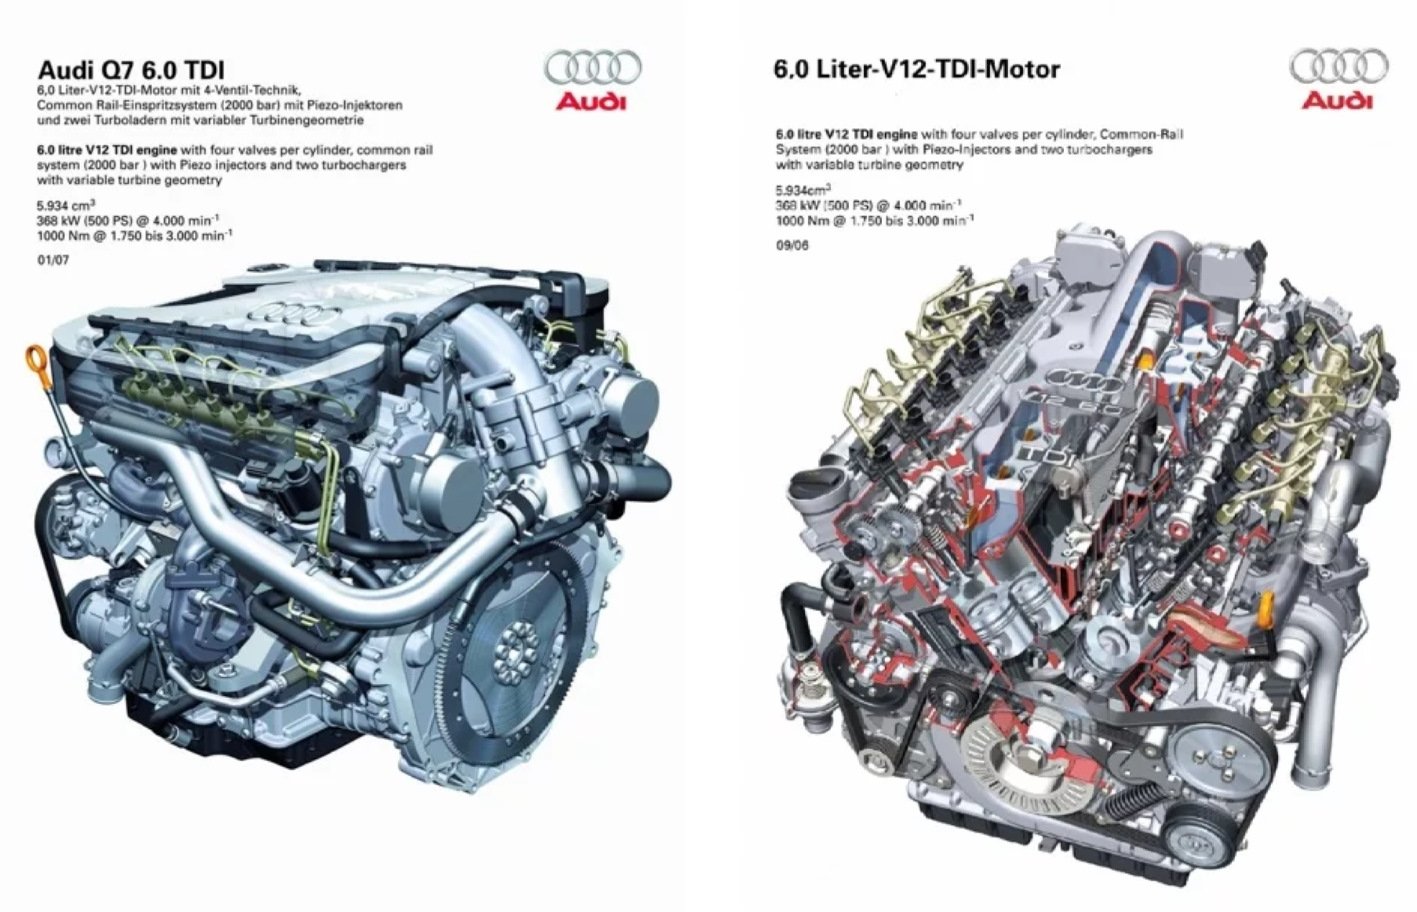 Моторы audi q7. Audi q7 v12 TDI двигатель. Мотор Audi w12 TDI. Audi q7 6.0 v12 TDI. Двигатель Audi q7 5.9 TDI.